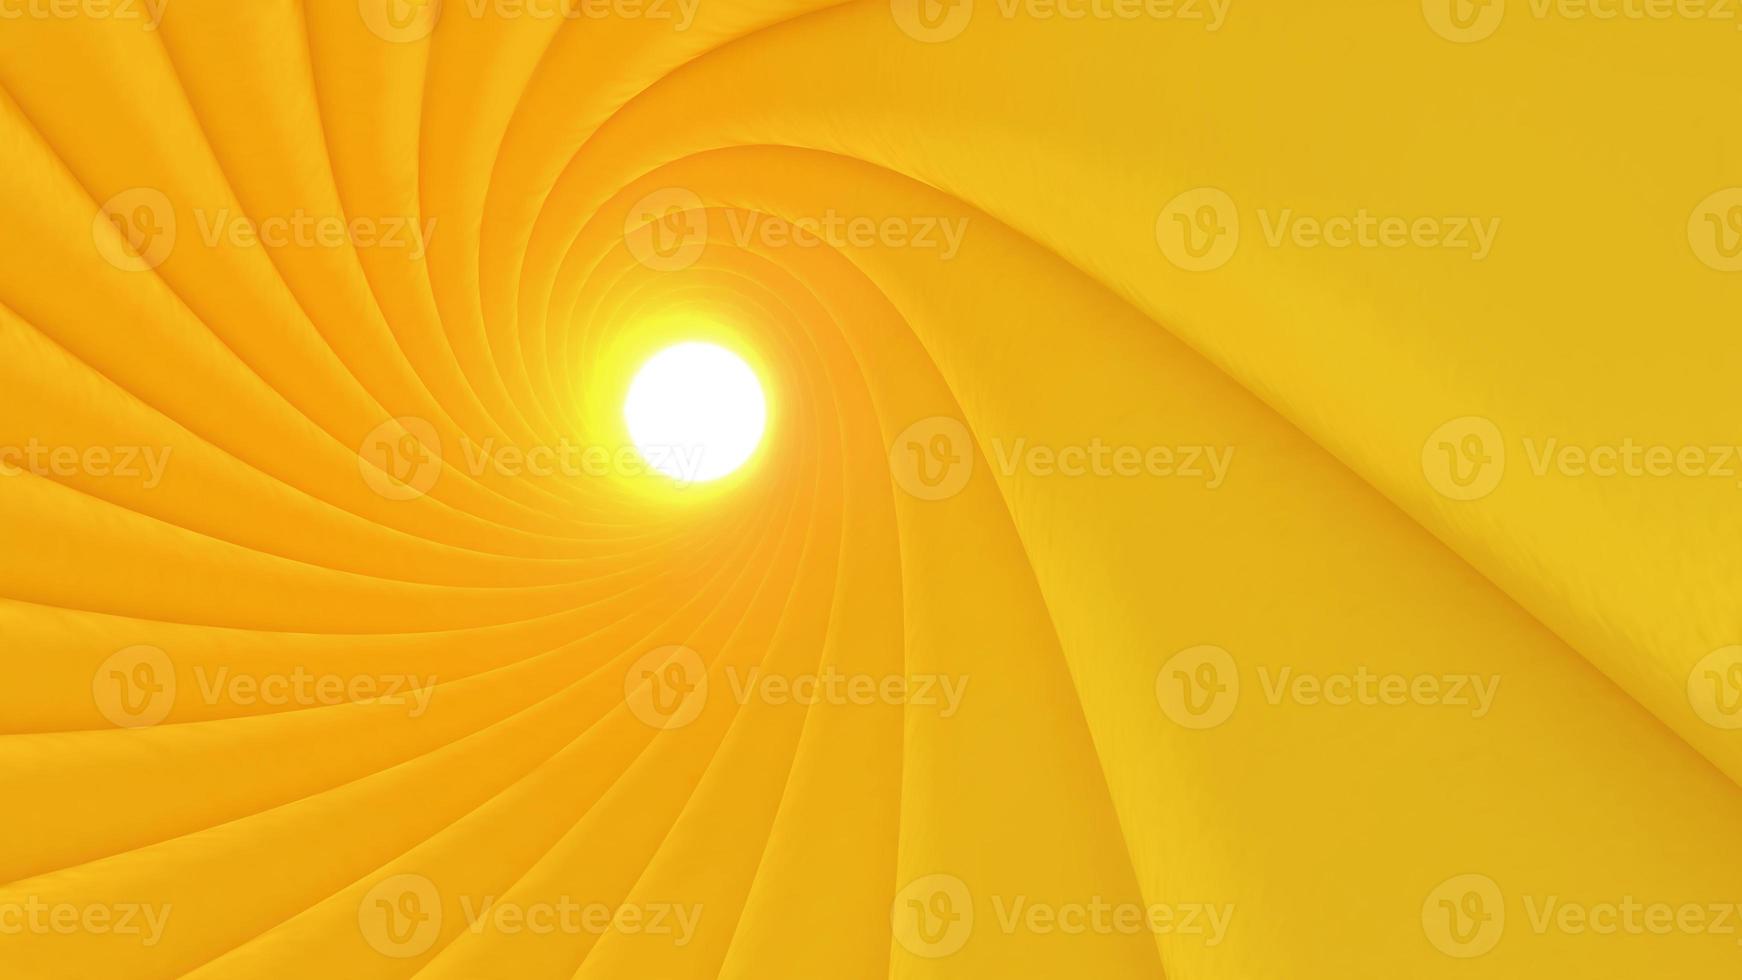 imagem abstrata de um redemoinho de um túnel amarelo., fundo geométrico, renderização em 3d foto